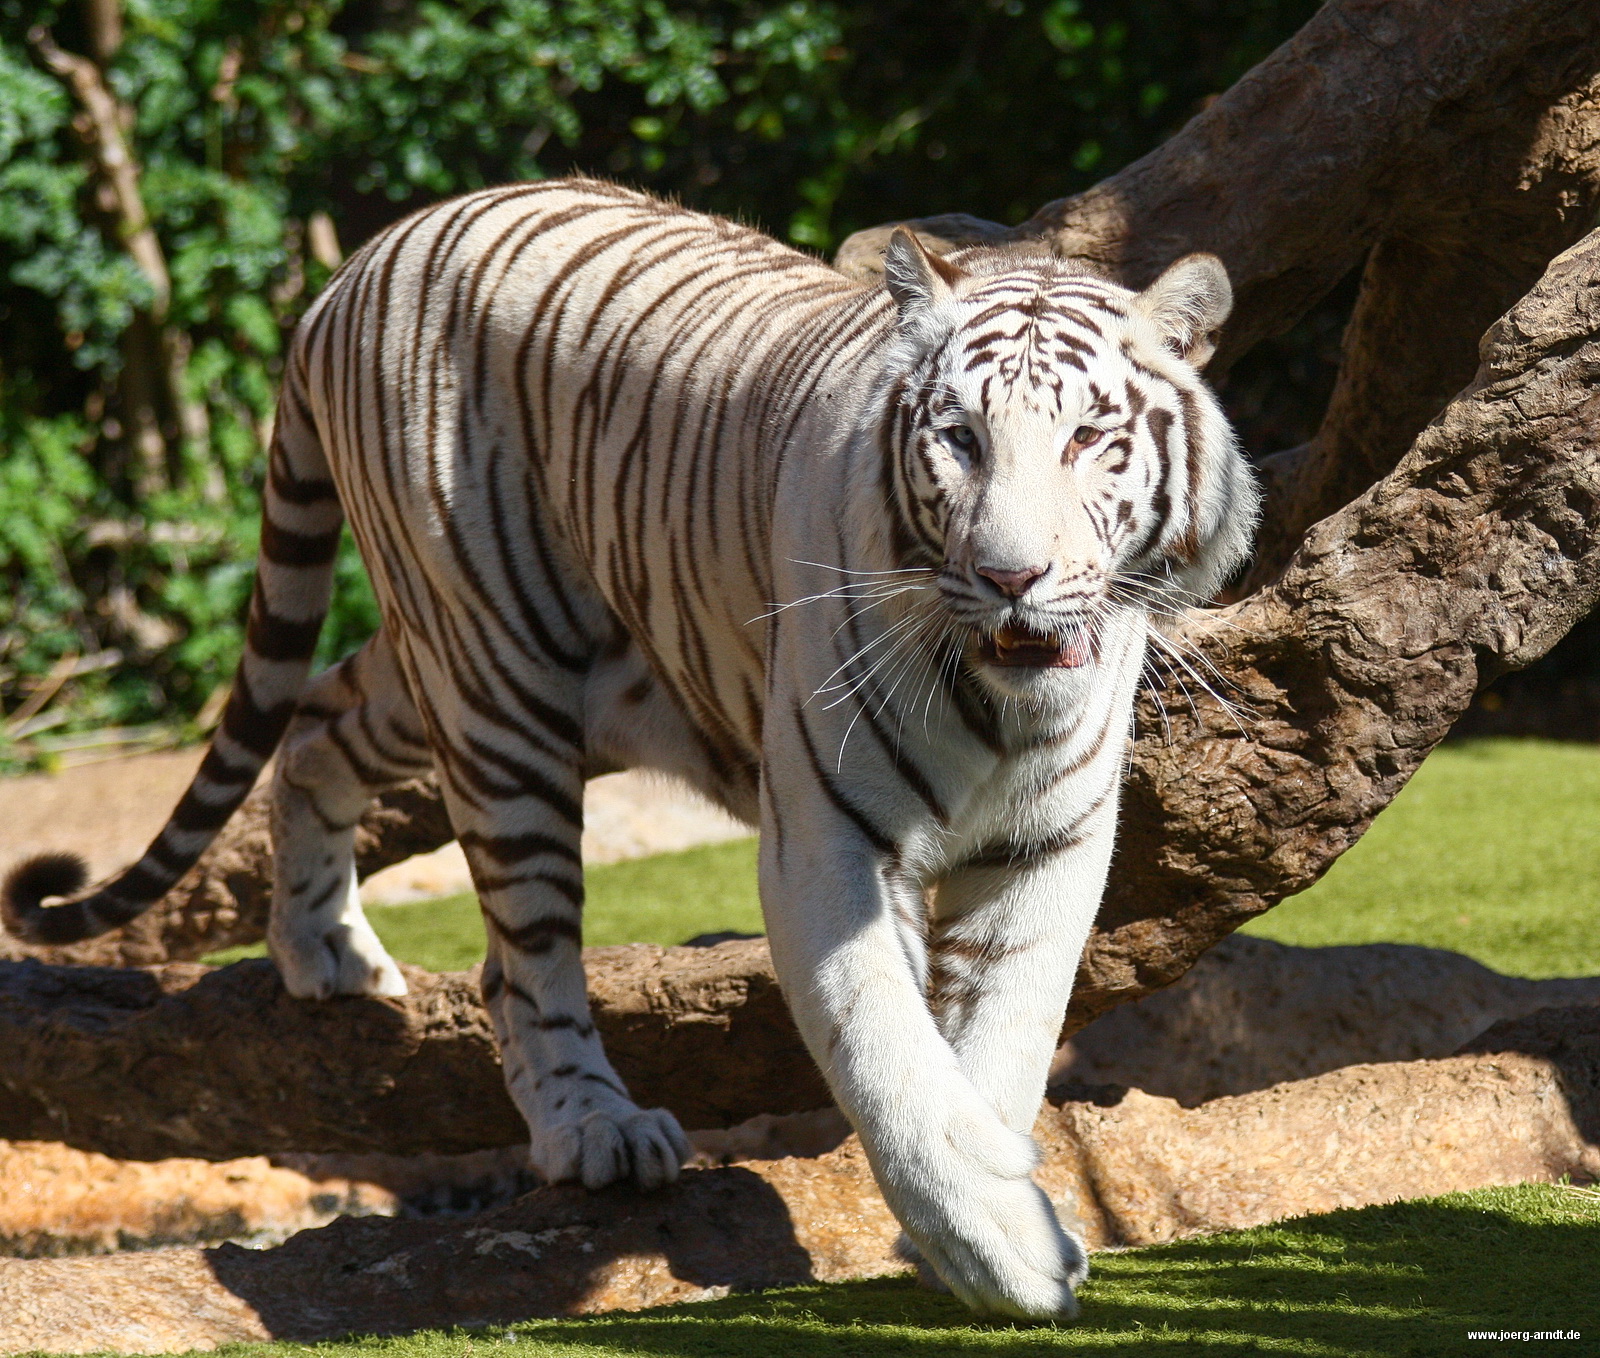 Die weißen Tiger sind eine weitere Attraktion des Parks.